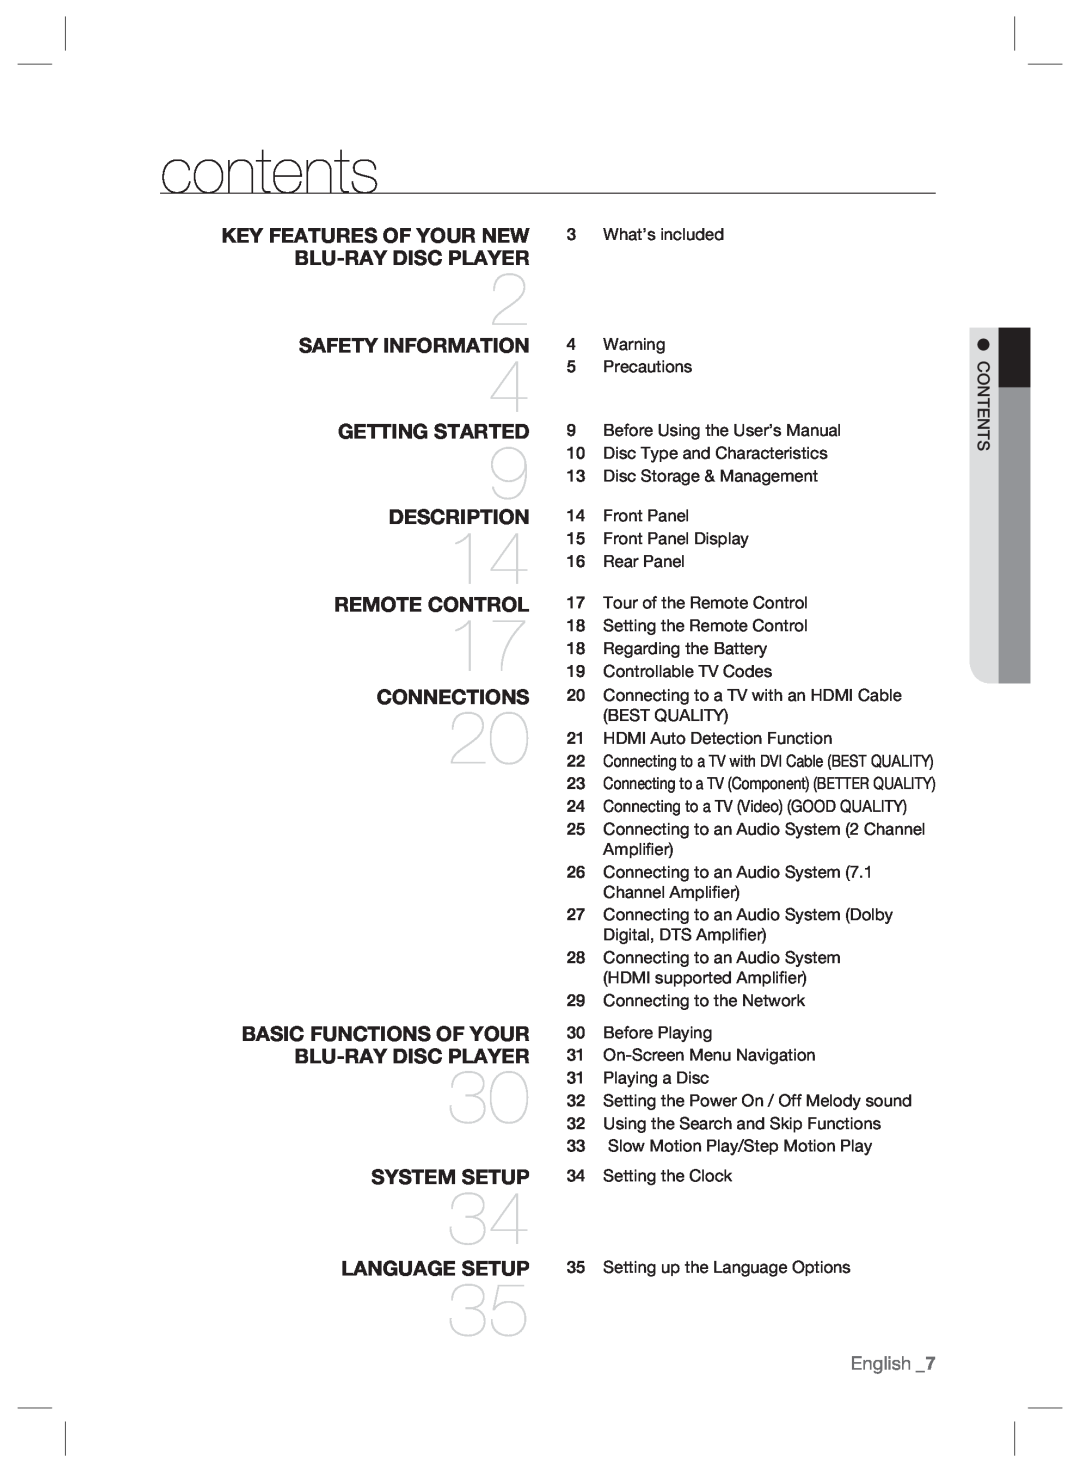 Samsung BD-P2500/XEF, BD-P2500/EDC, BD-P2500/XEE manual contents 